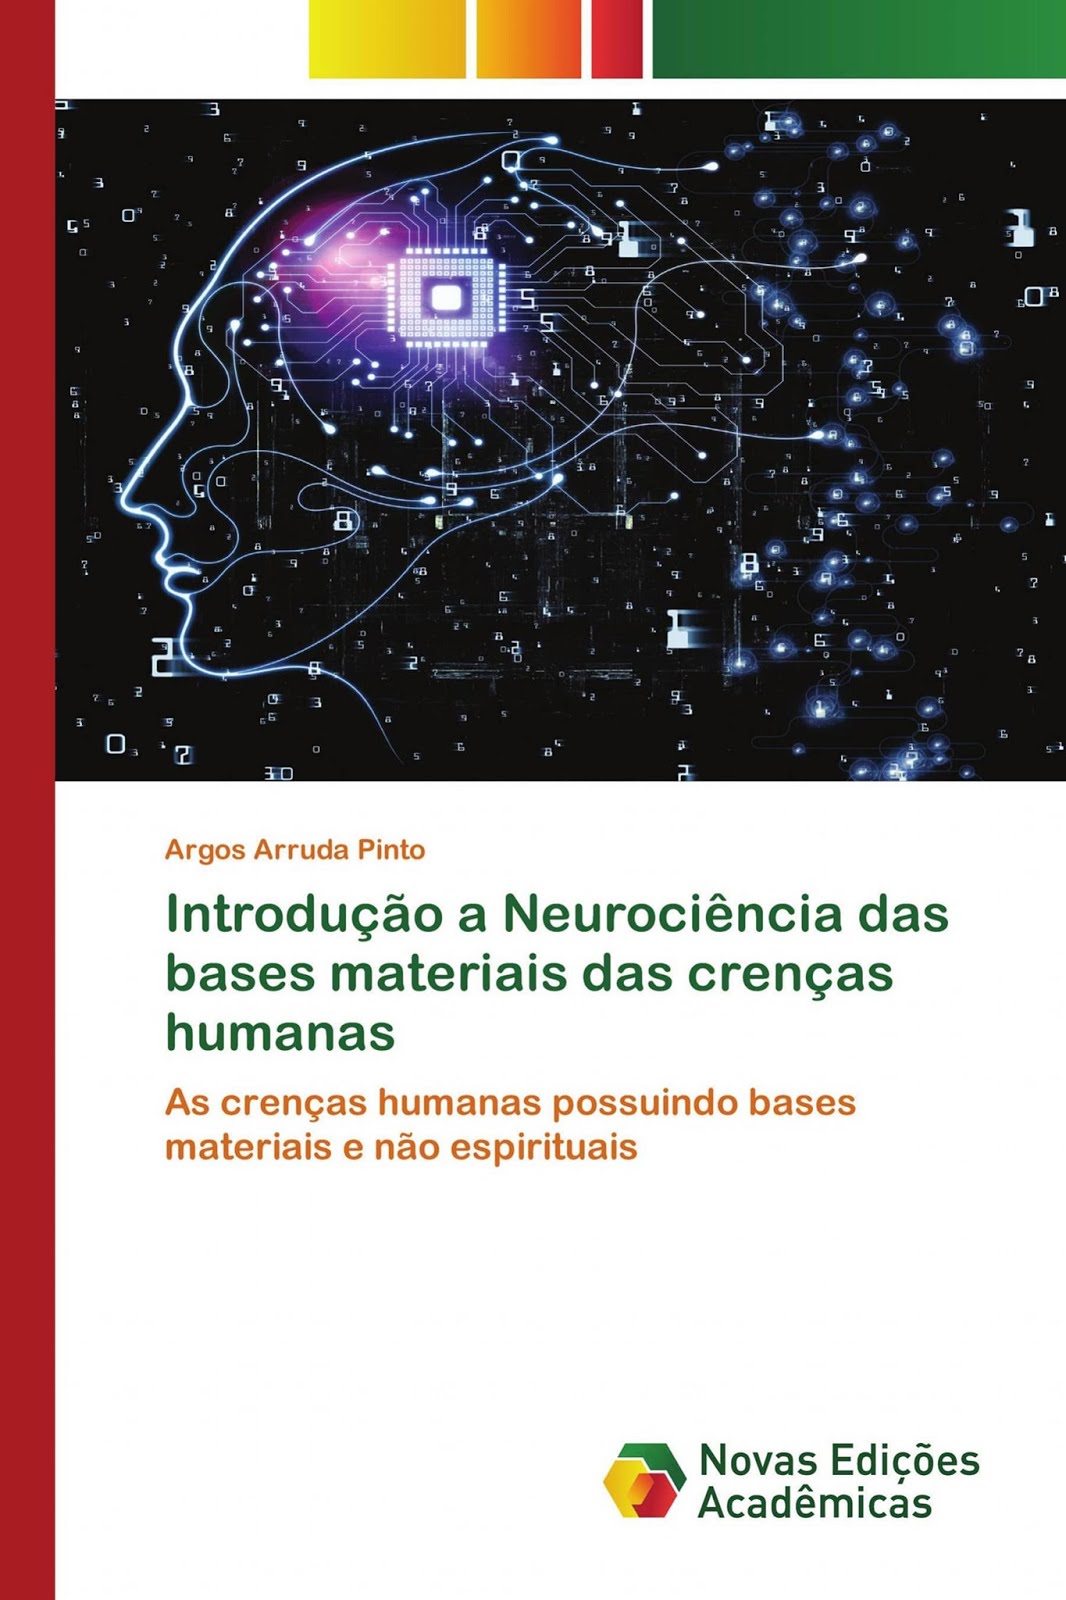 Meu 2o livro: "Introdução a Neurociência das bases materiais das crenças humanas"